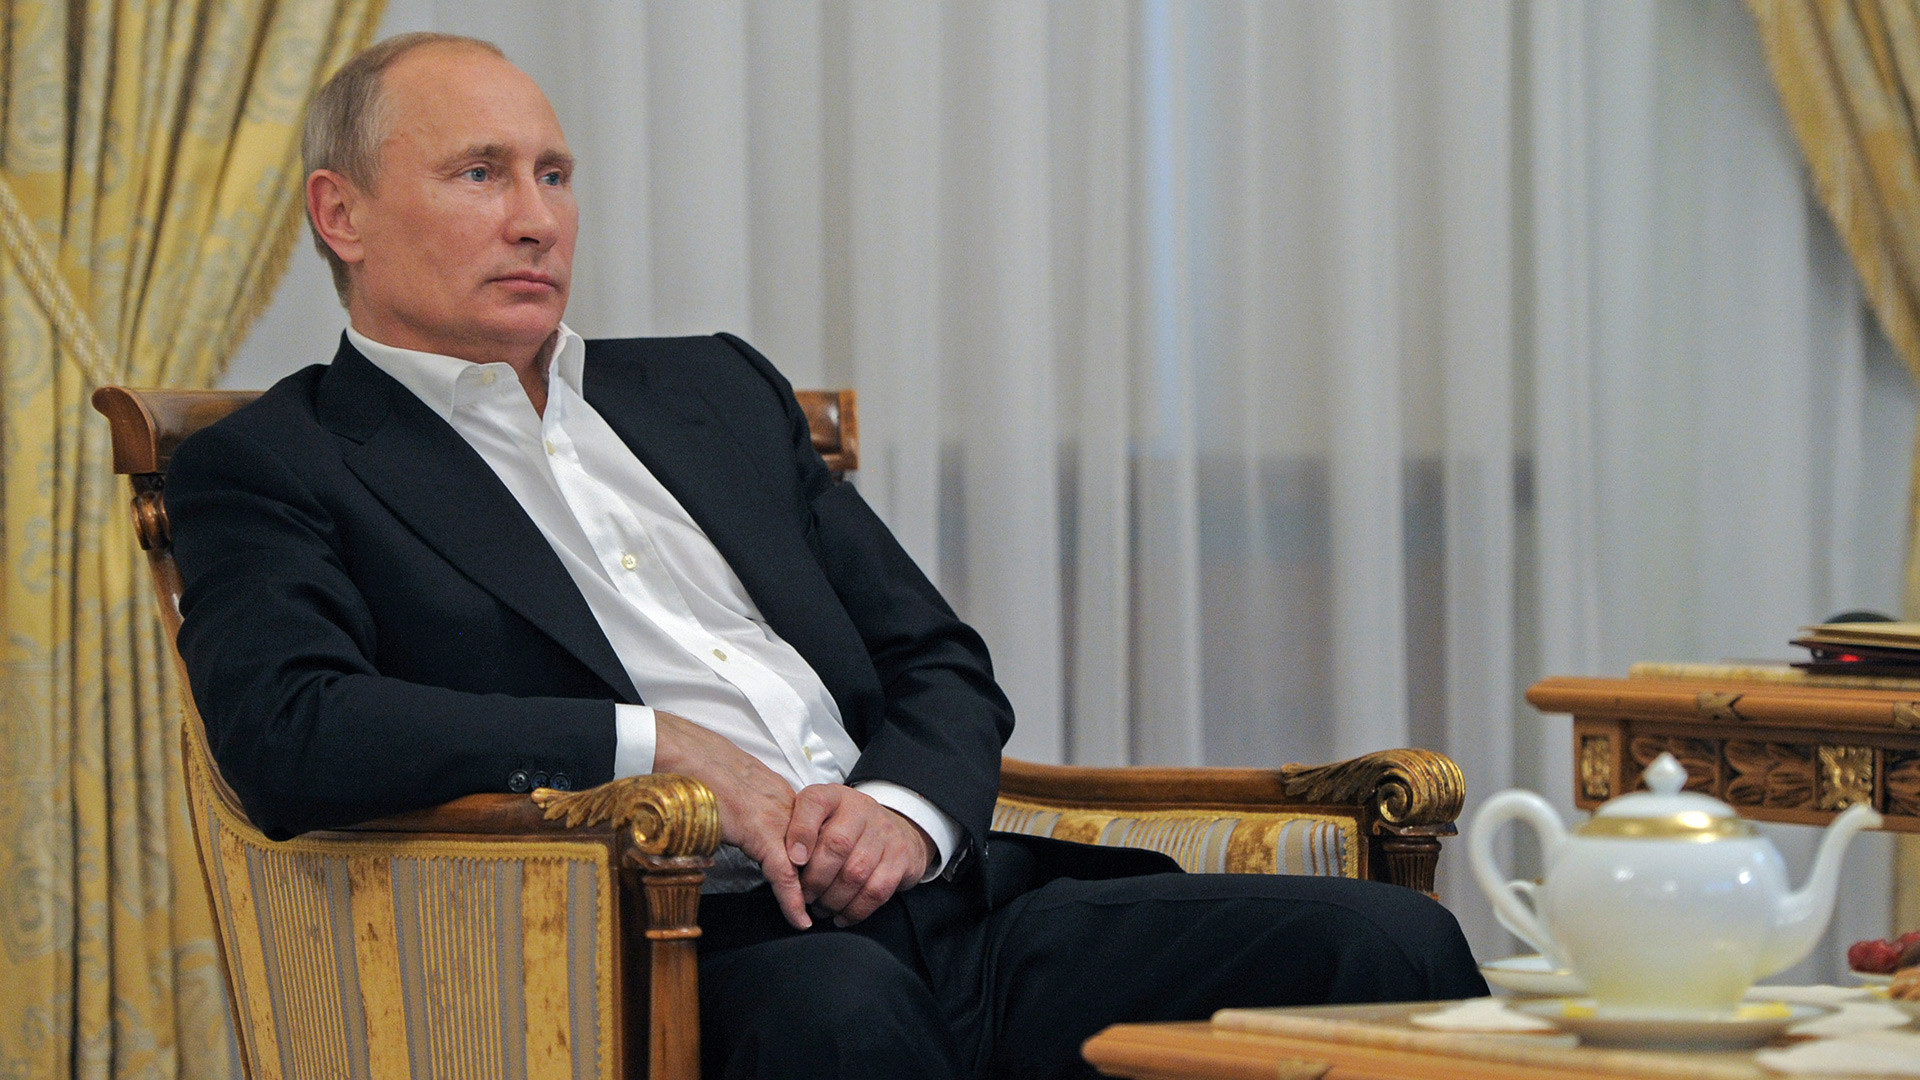 ウラジーミル プーチン大統領の公邸8選 ロシア ビヨンド